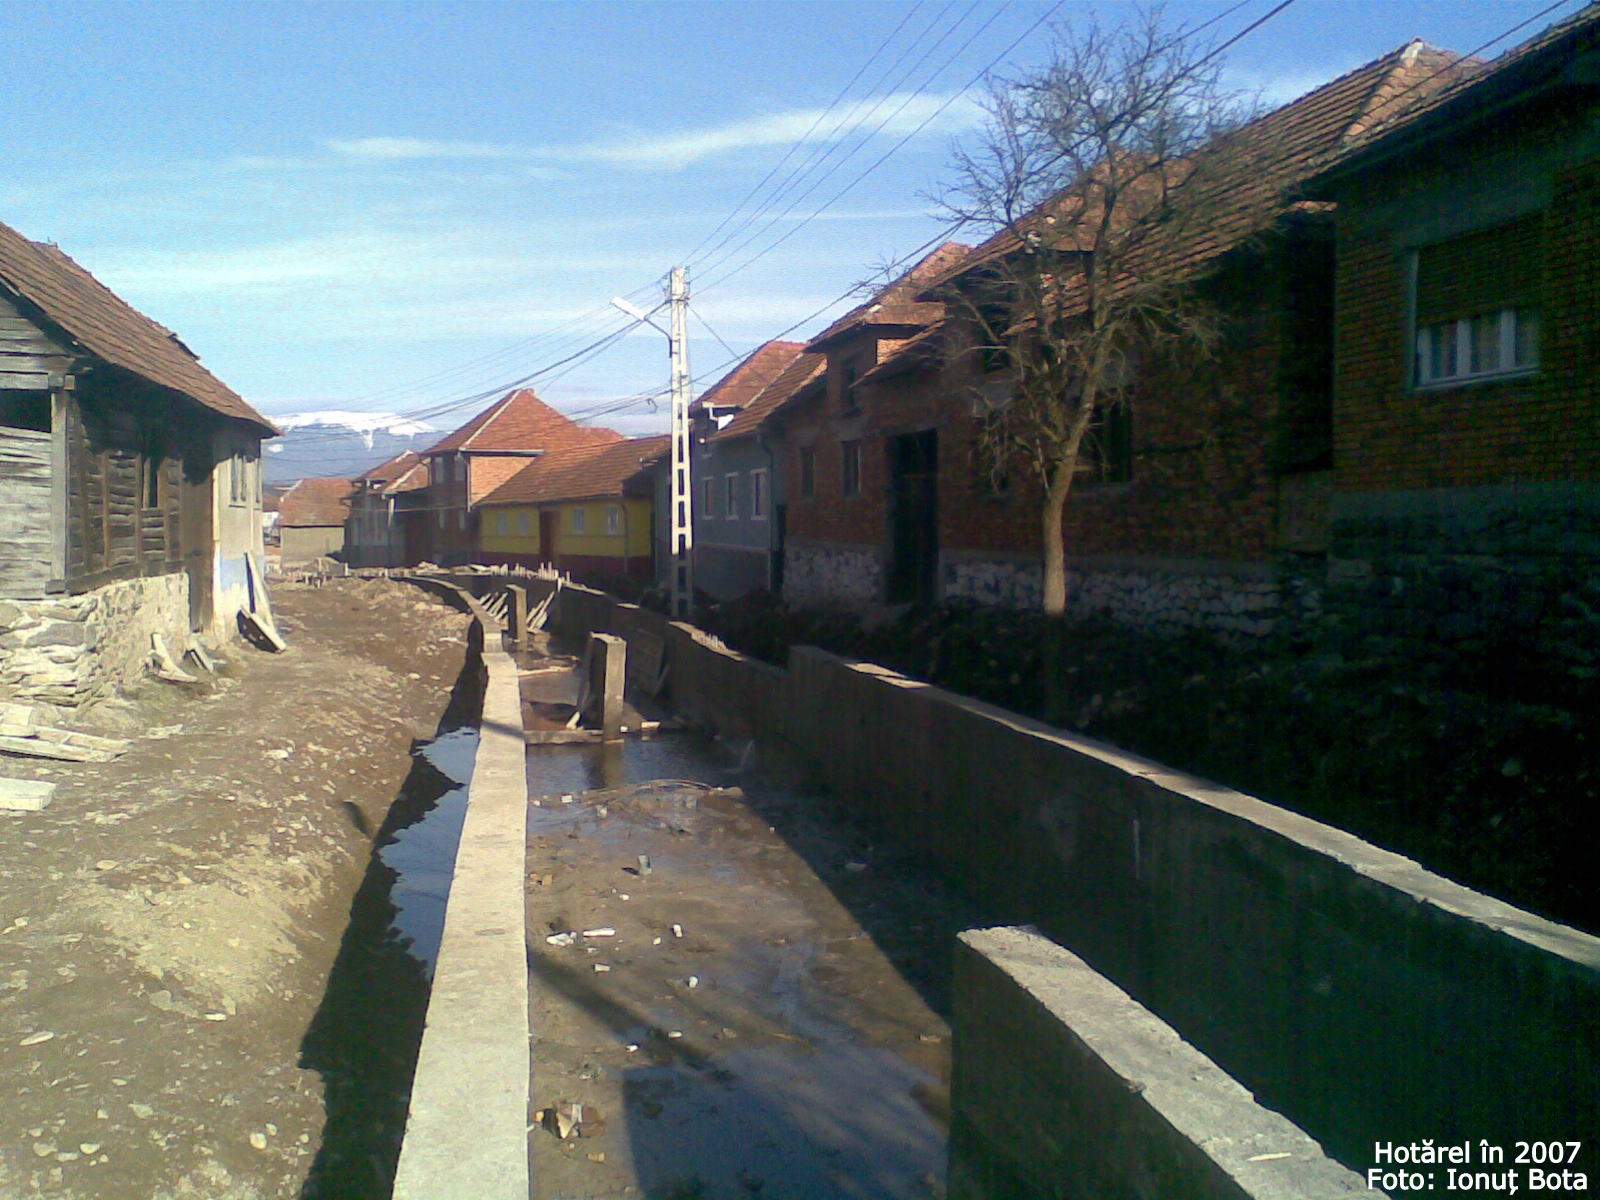 Hotarel, Bihor, Romania in 2007 ; satul Hotarel comuna Lunca judetul Bihor Romania